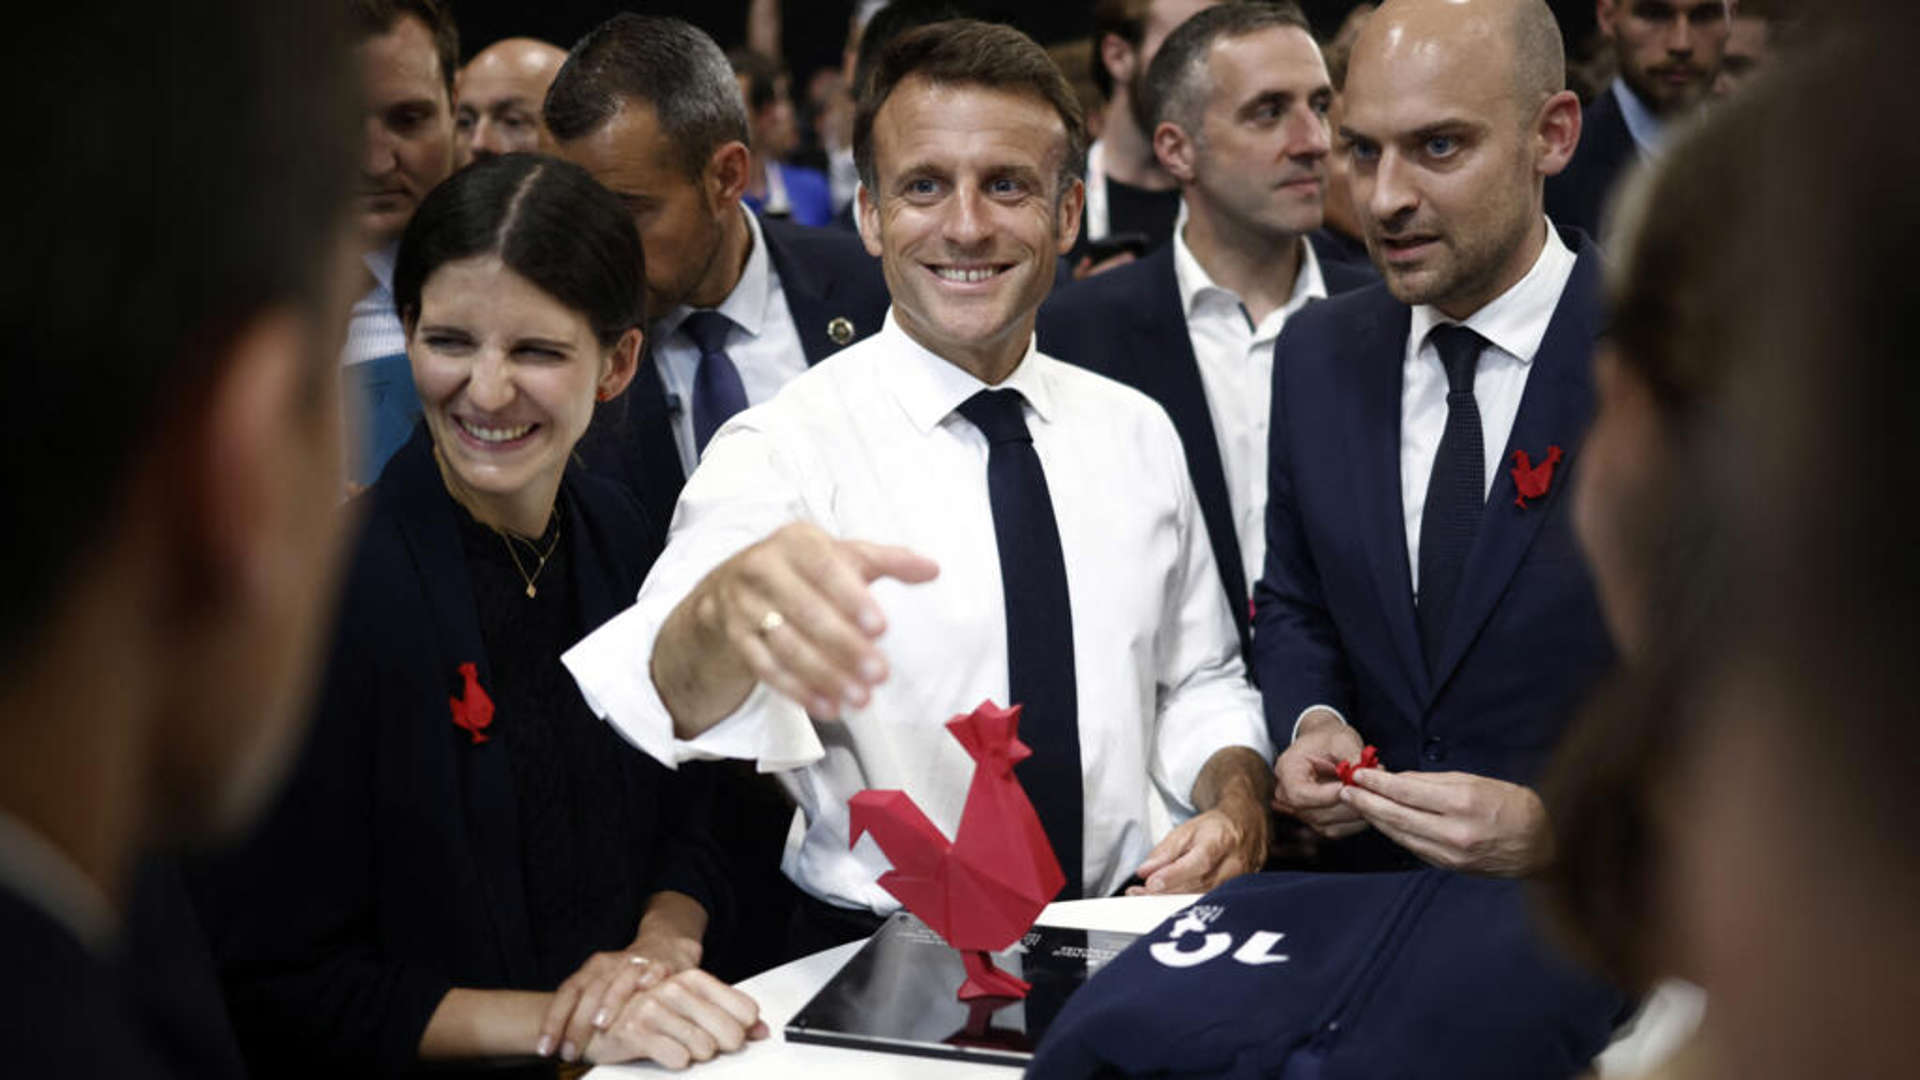 Emmanuel Macron vill göra Frankrike till en "mästare" inom artificiell intelligens